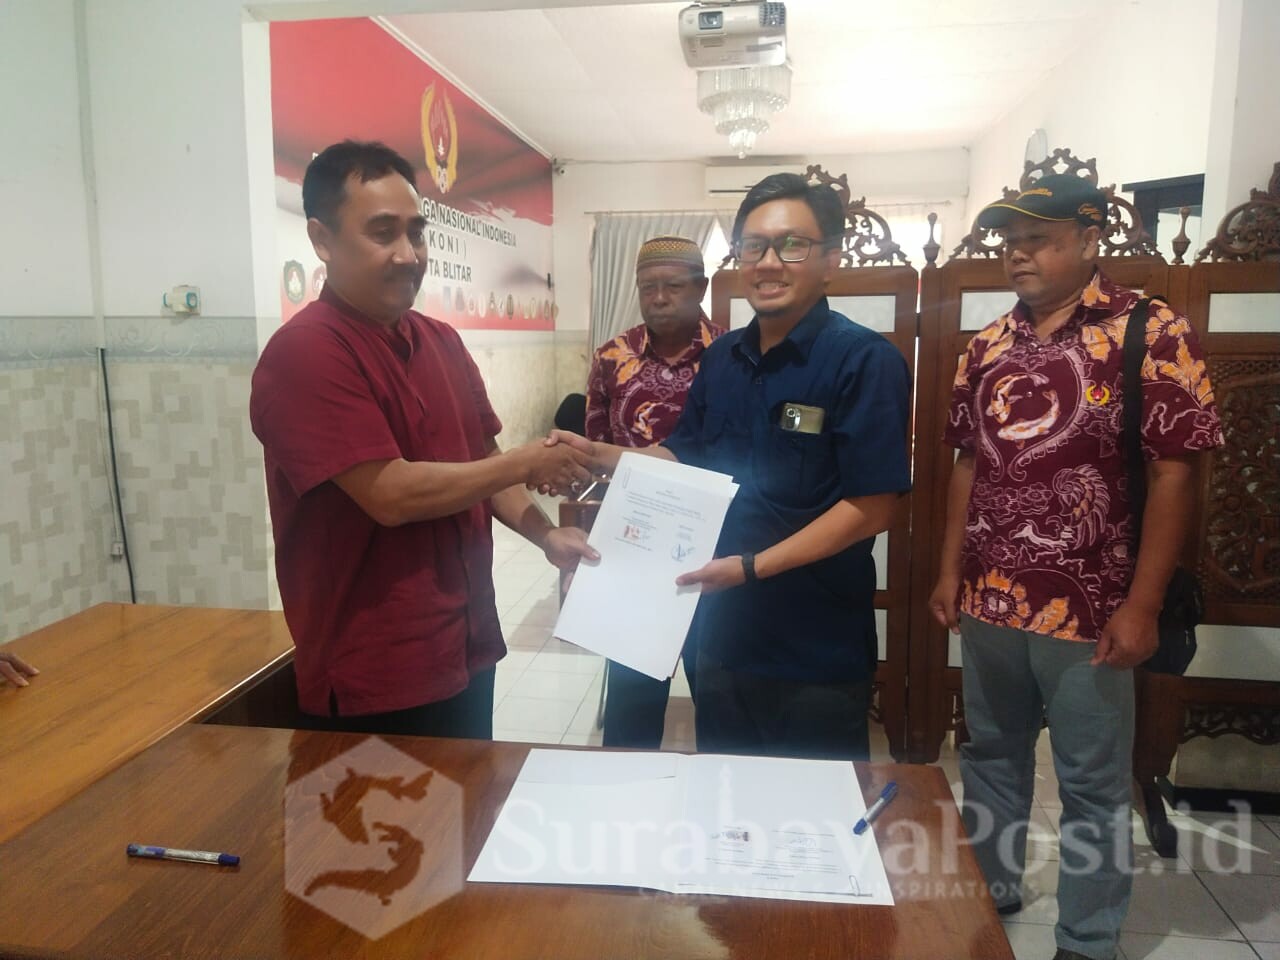 Ketua Prodi PJKR IKIP Budi Utomo Malang, Yulianto Dwi Saputro, M.Sc, M.Pd (baju biru) dan Ketua KONI Kota Blitar, Sukardji, menunjukkan bukti kerjasama yang telah ditandatangani kedua belah pihak (ist)